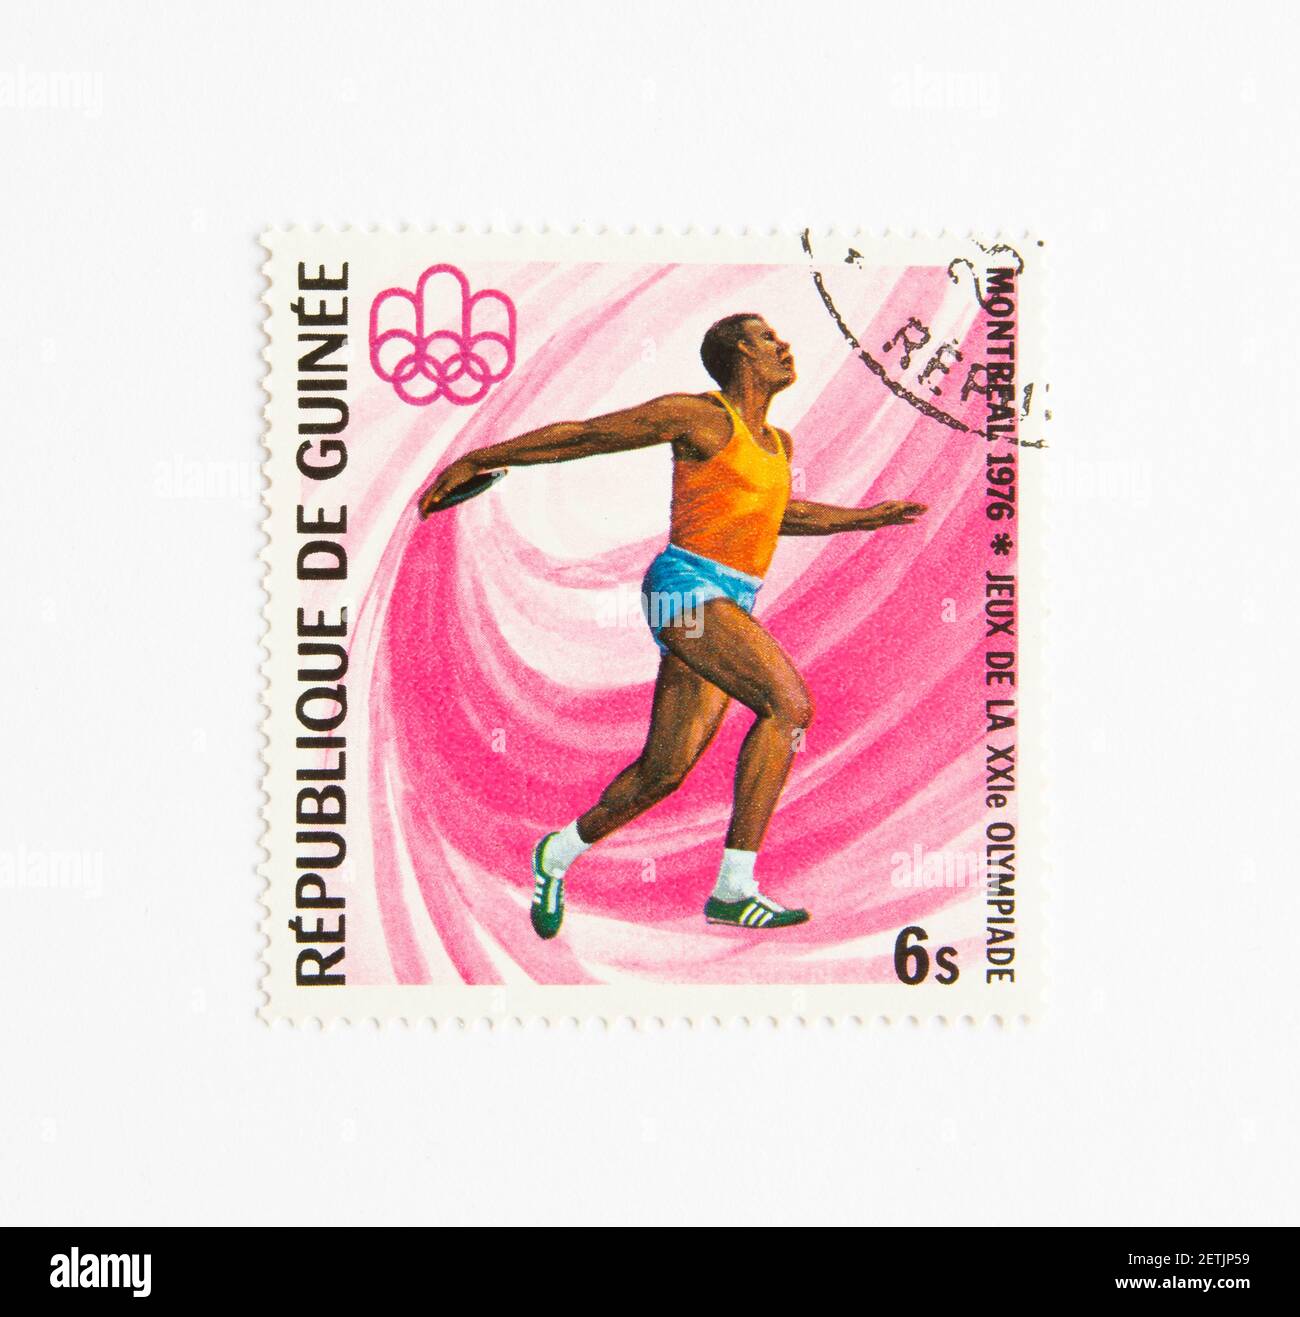 01.03.2021 Istanbul Turchia. Repubblica di Guinea francobollo. Circa 1976. Montreal 1976 Olimpiadi estive. Lancio discus Foto Stock